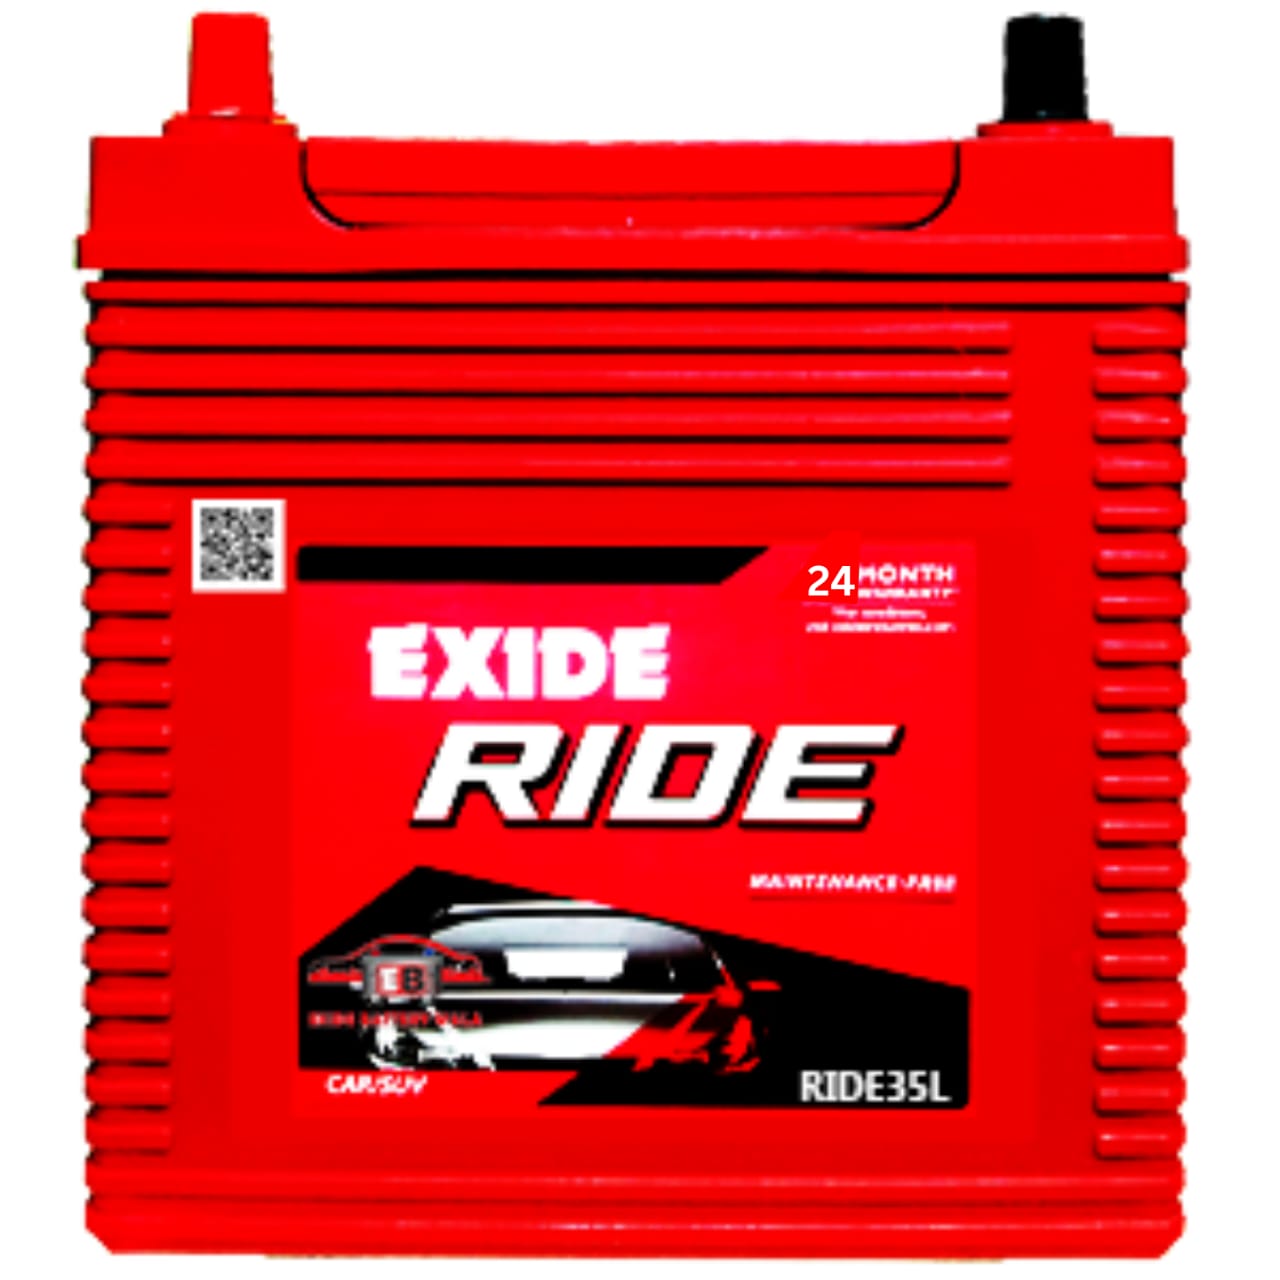 Exide-RIDE-35L